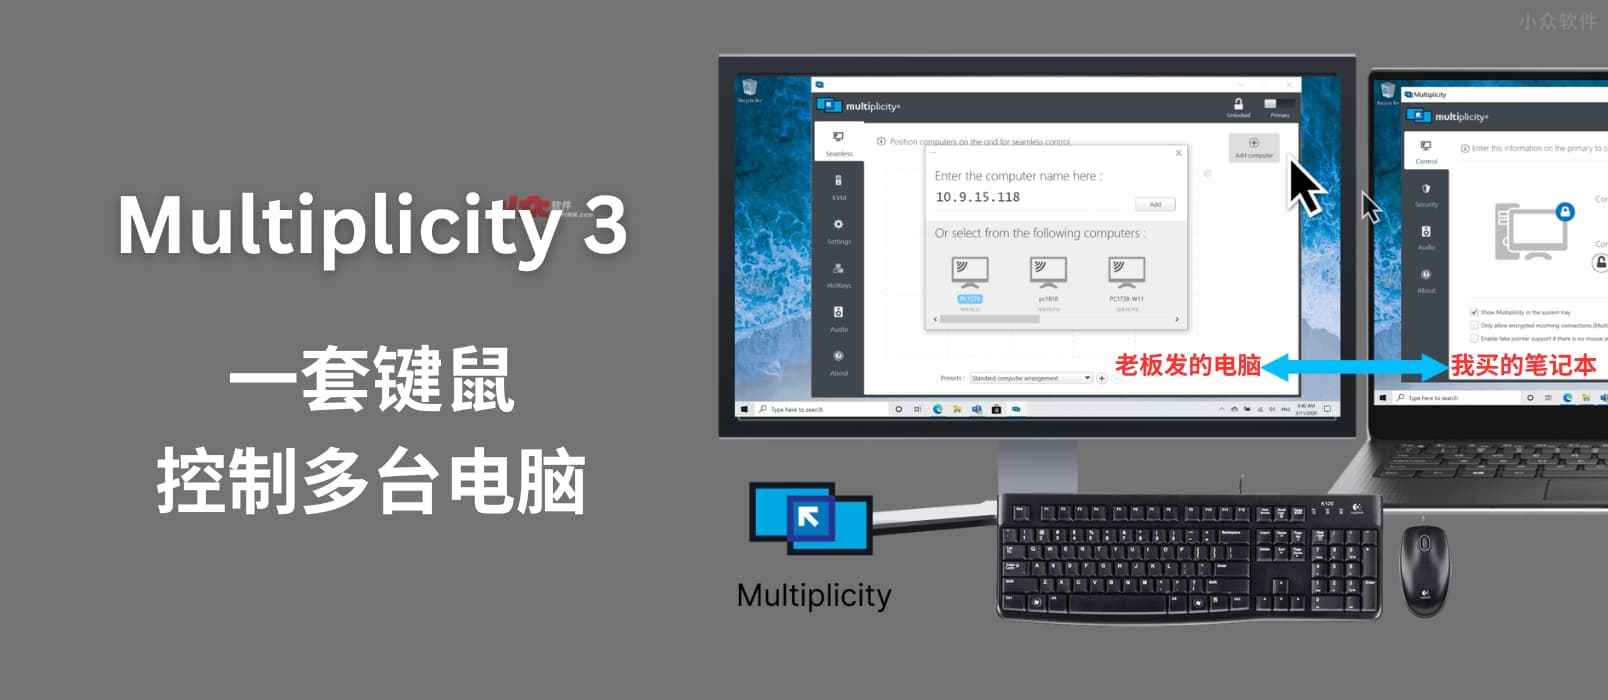 Multiplicity 3 - 通过一套键盘鼠标跨屏幕控制多达 9 台电脑，还能共享音频[Windows] 9